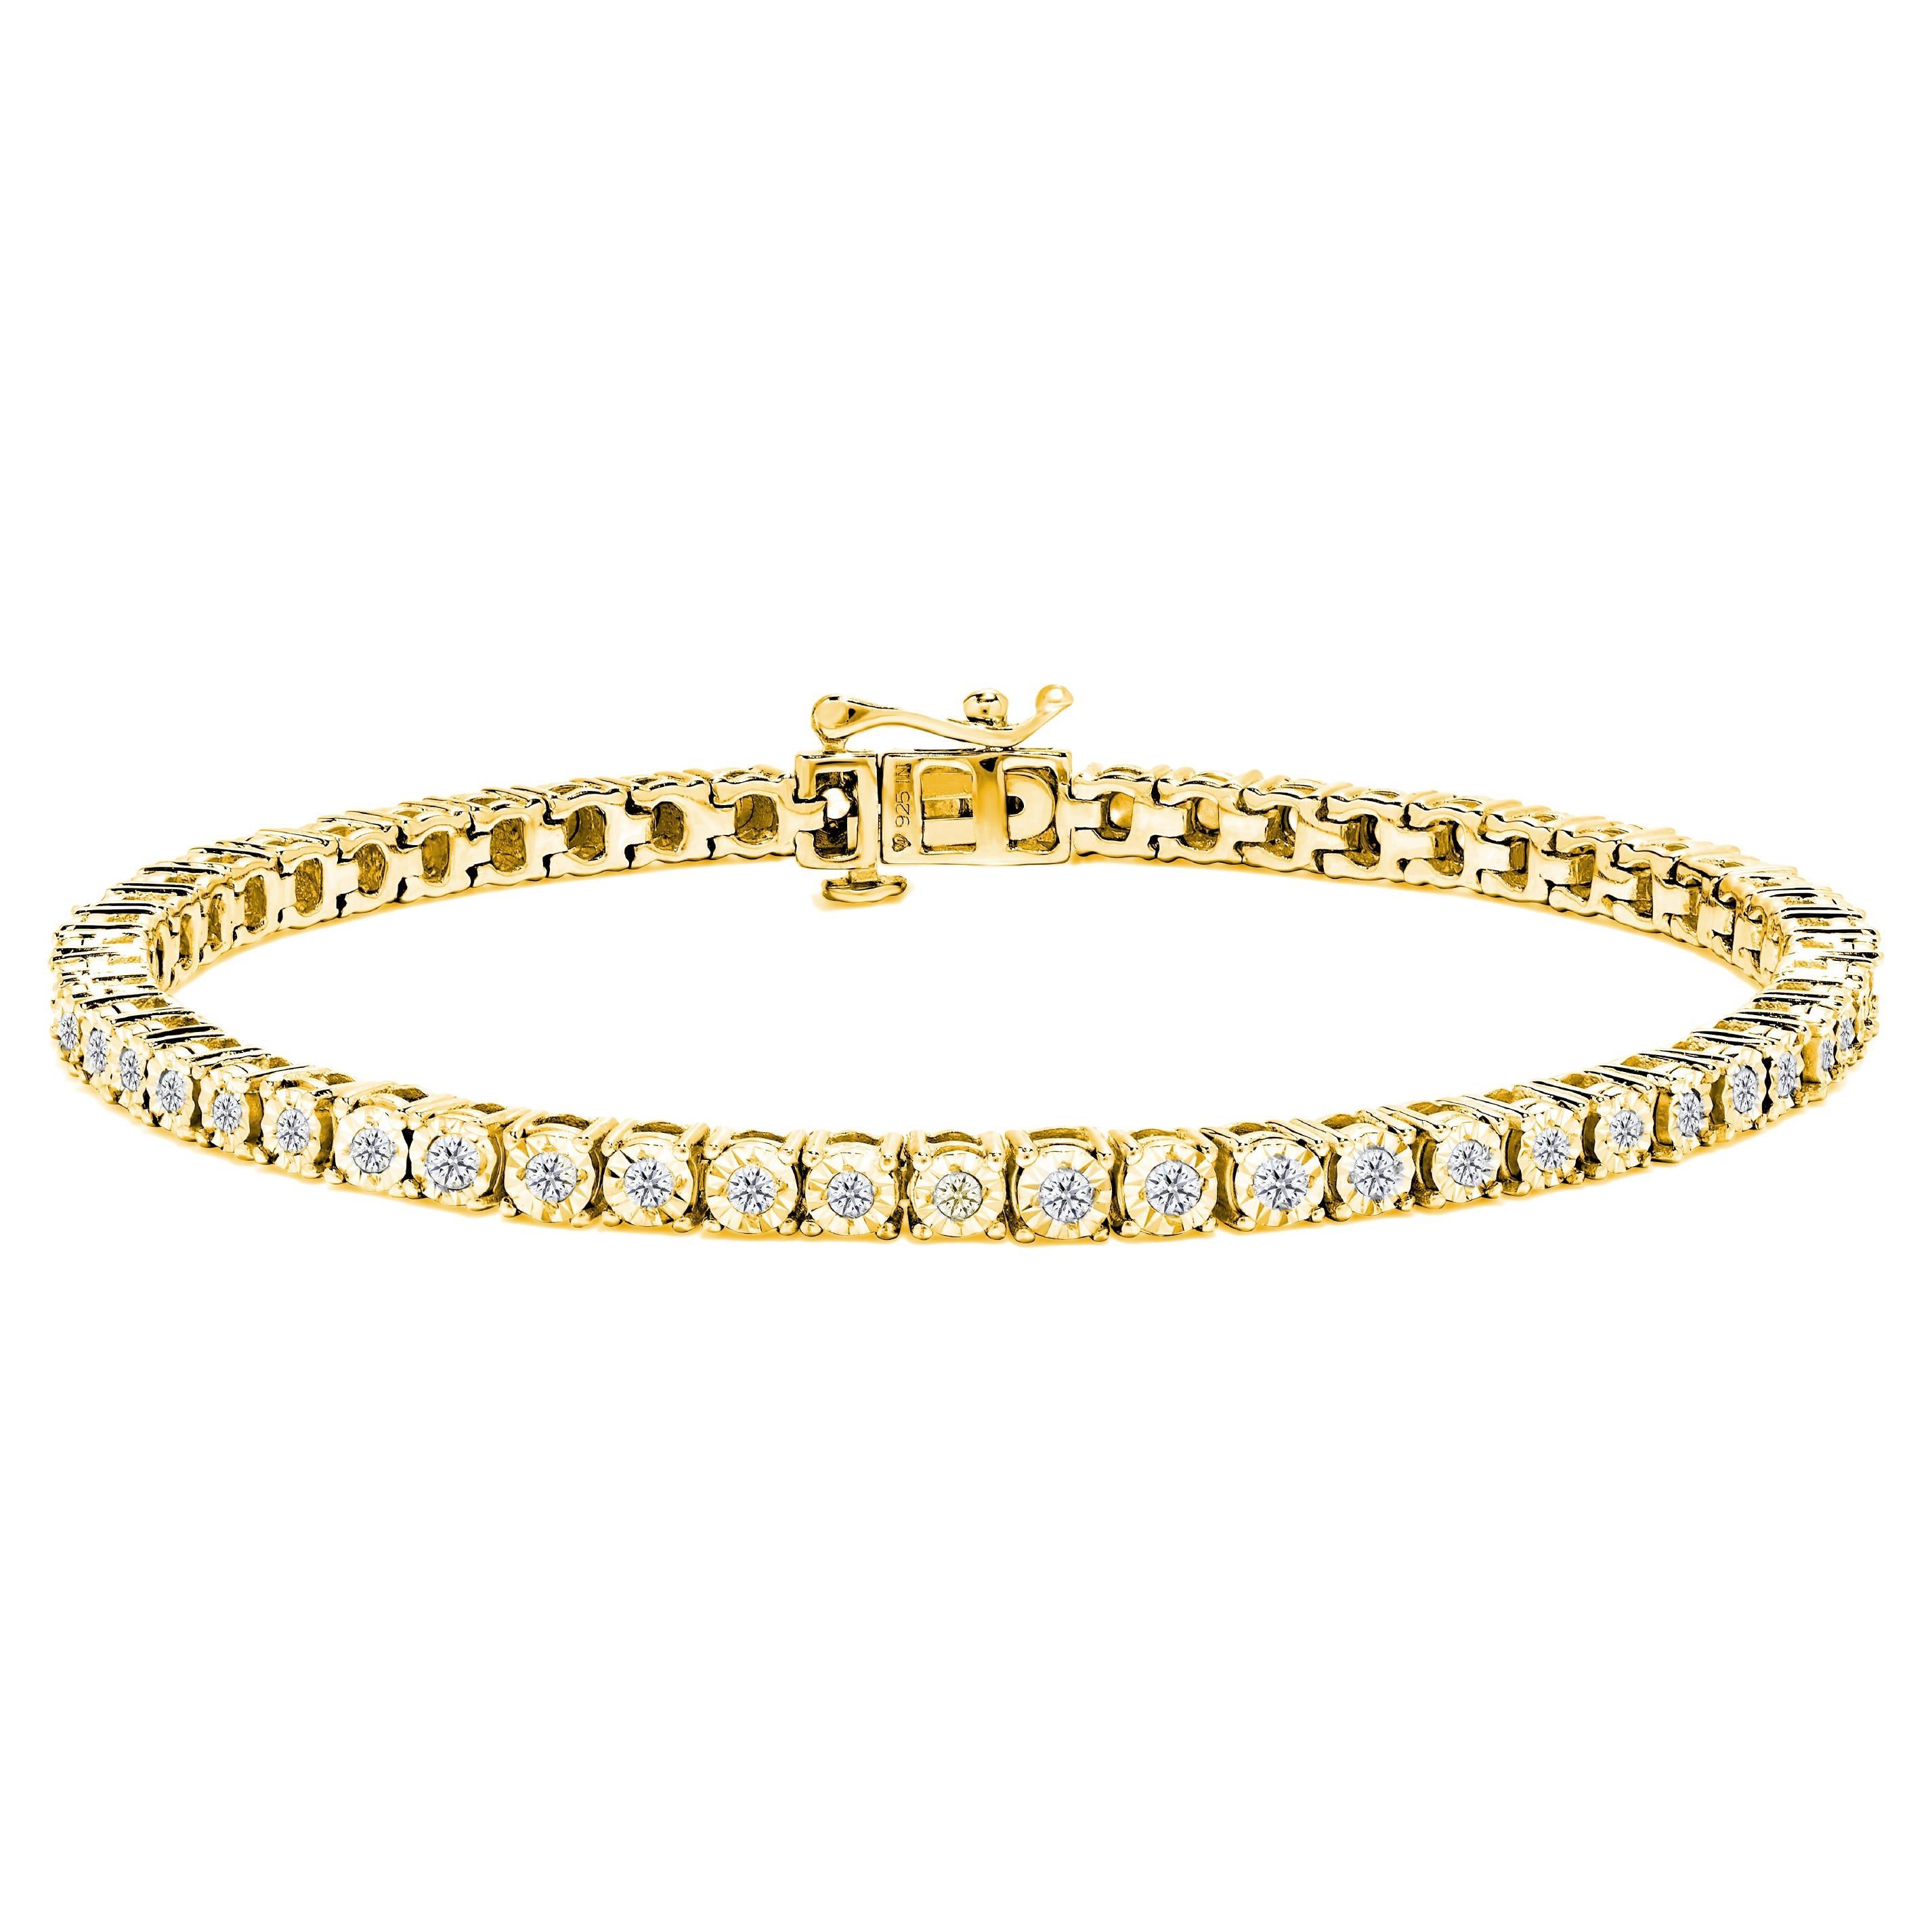 Bracelet tennis en or jaune 10 carats sur argent 1,0 carattw avec diamants ronds facettés